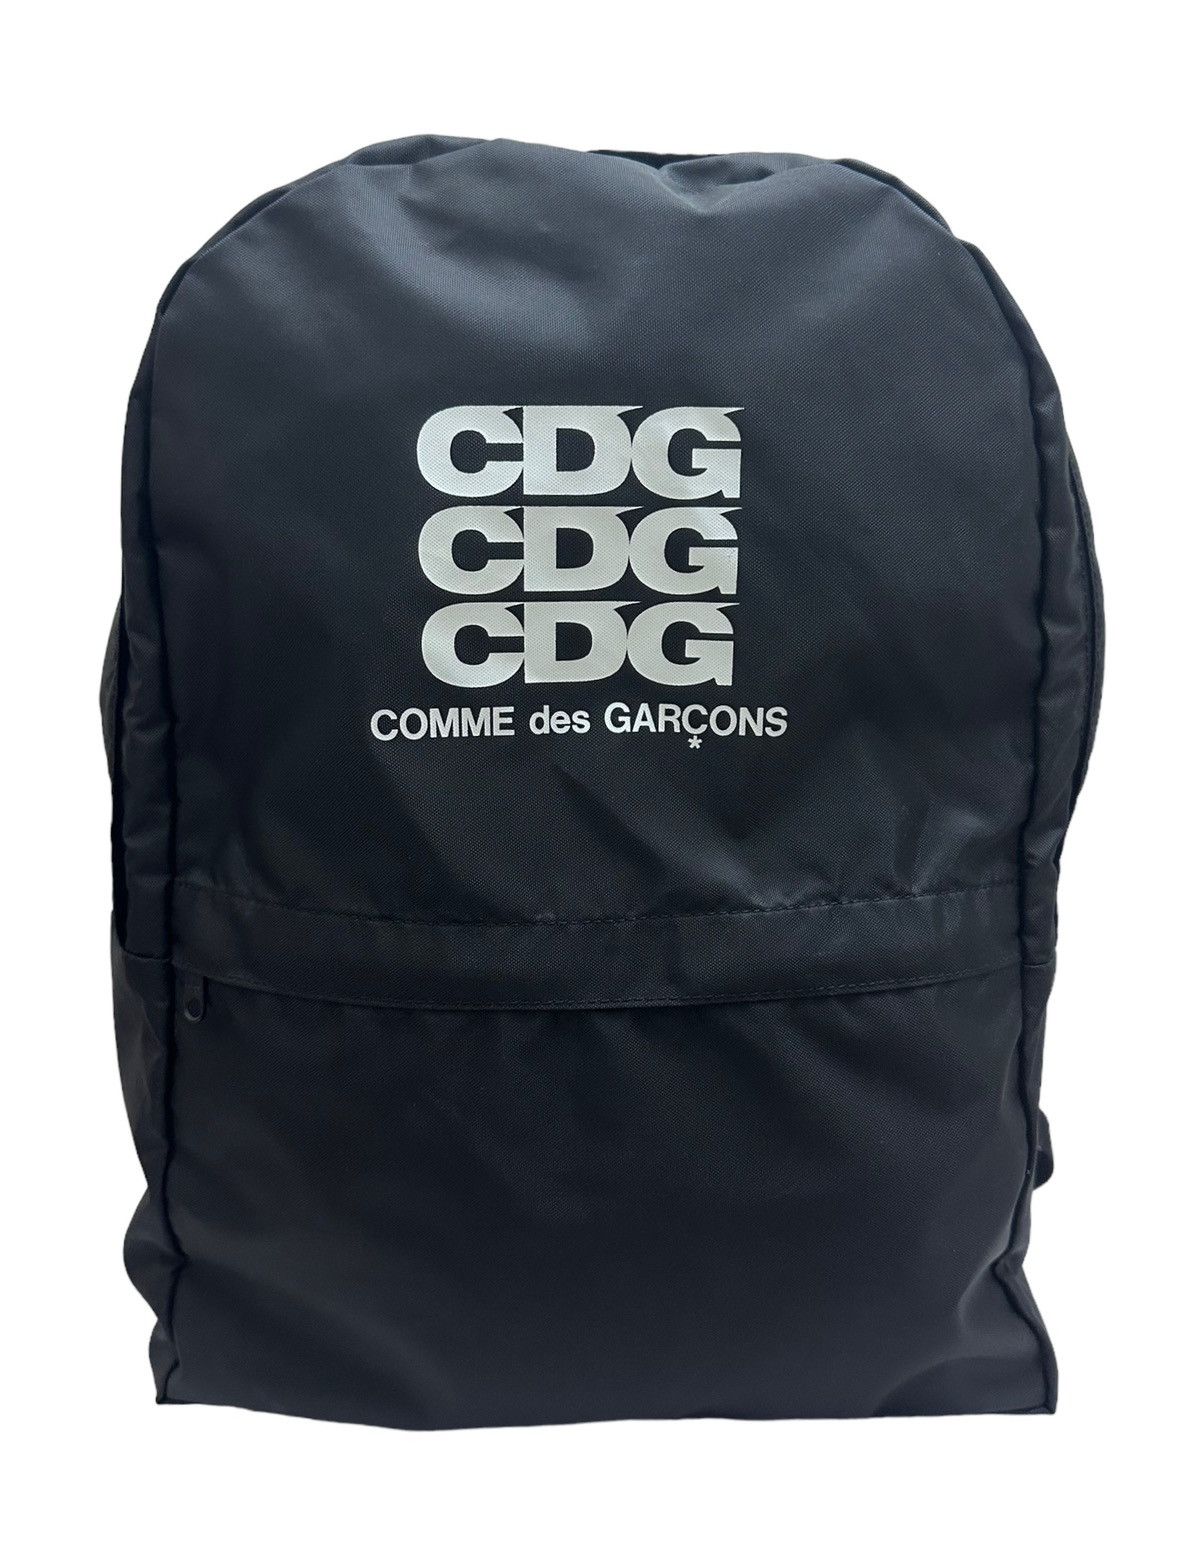 Comme Des Garcons Backpack | Grailed